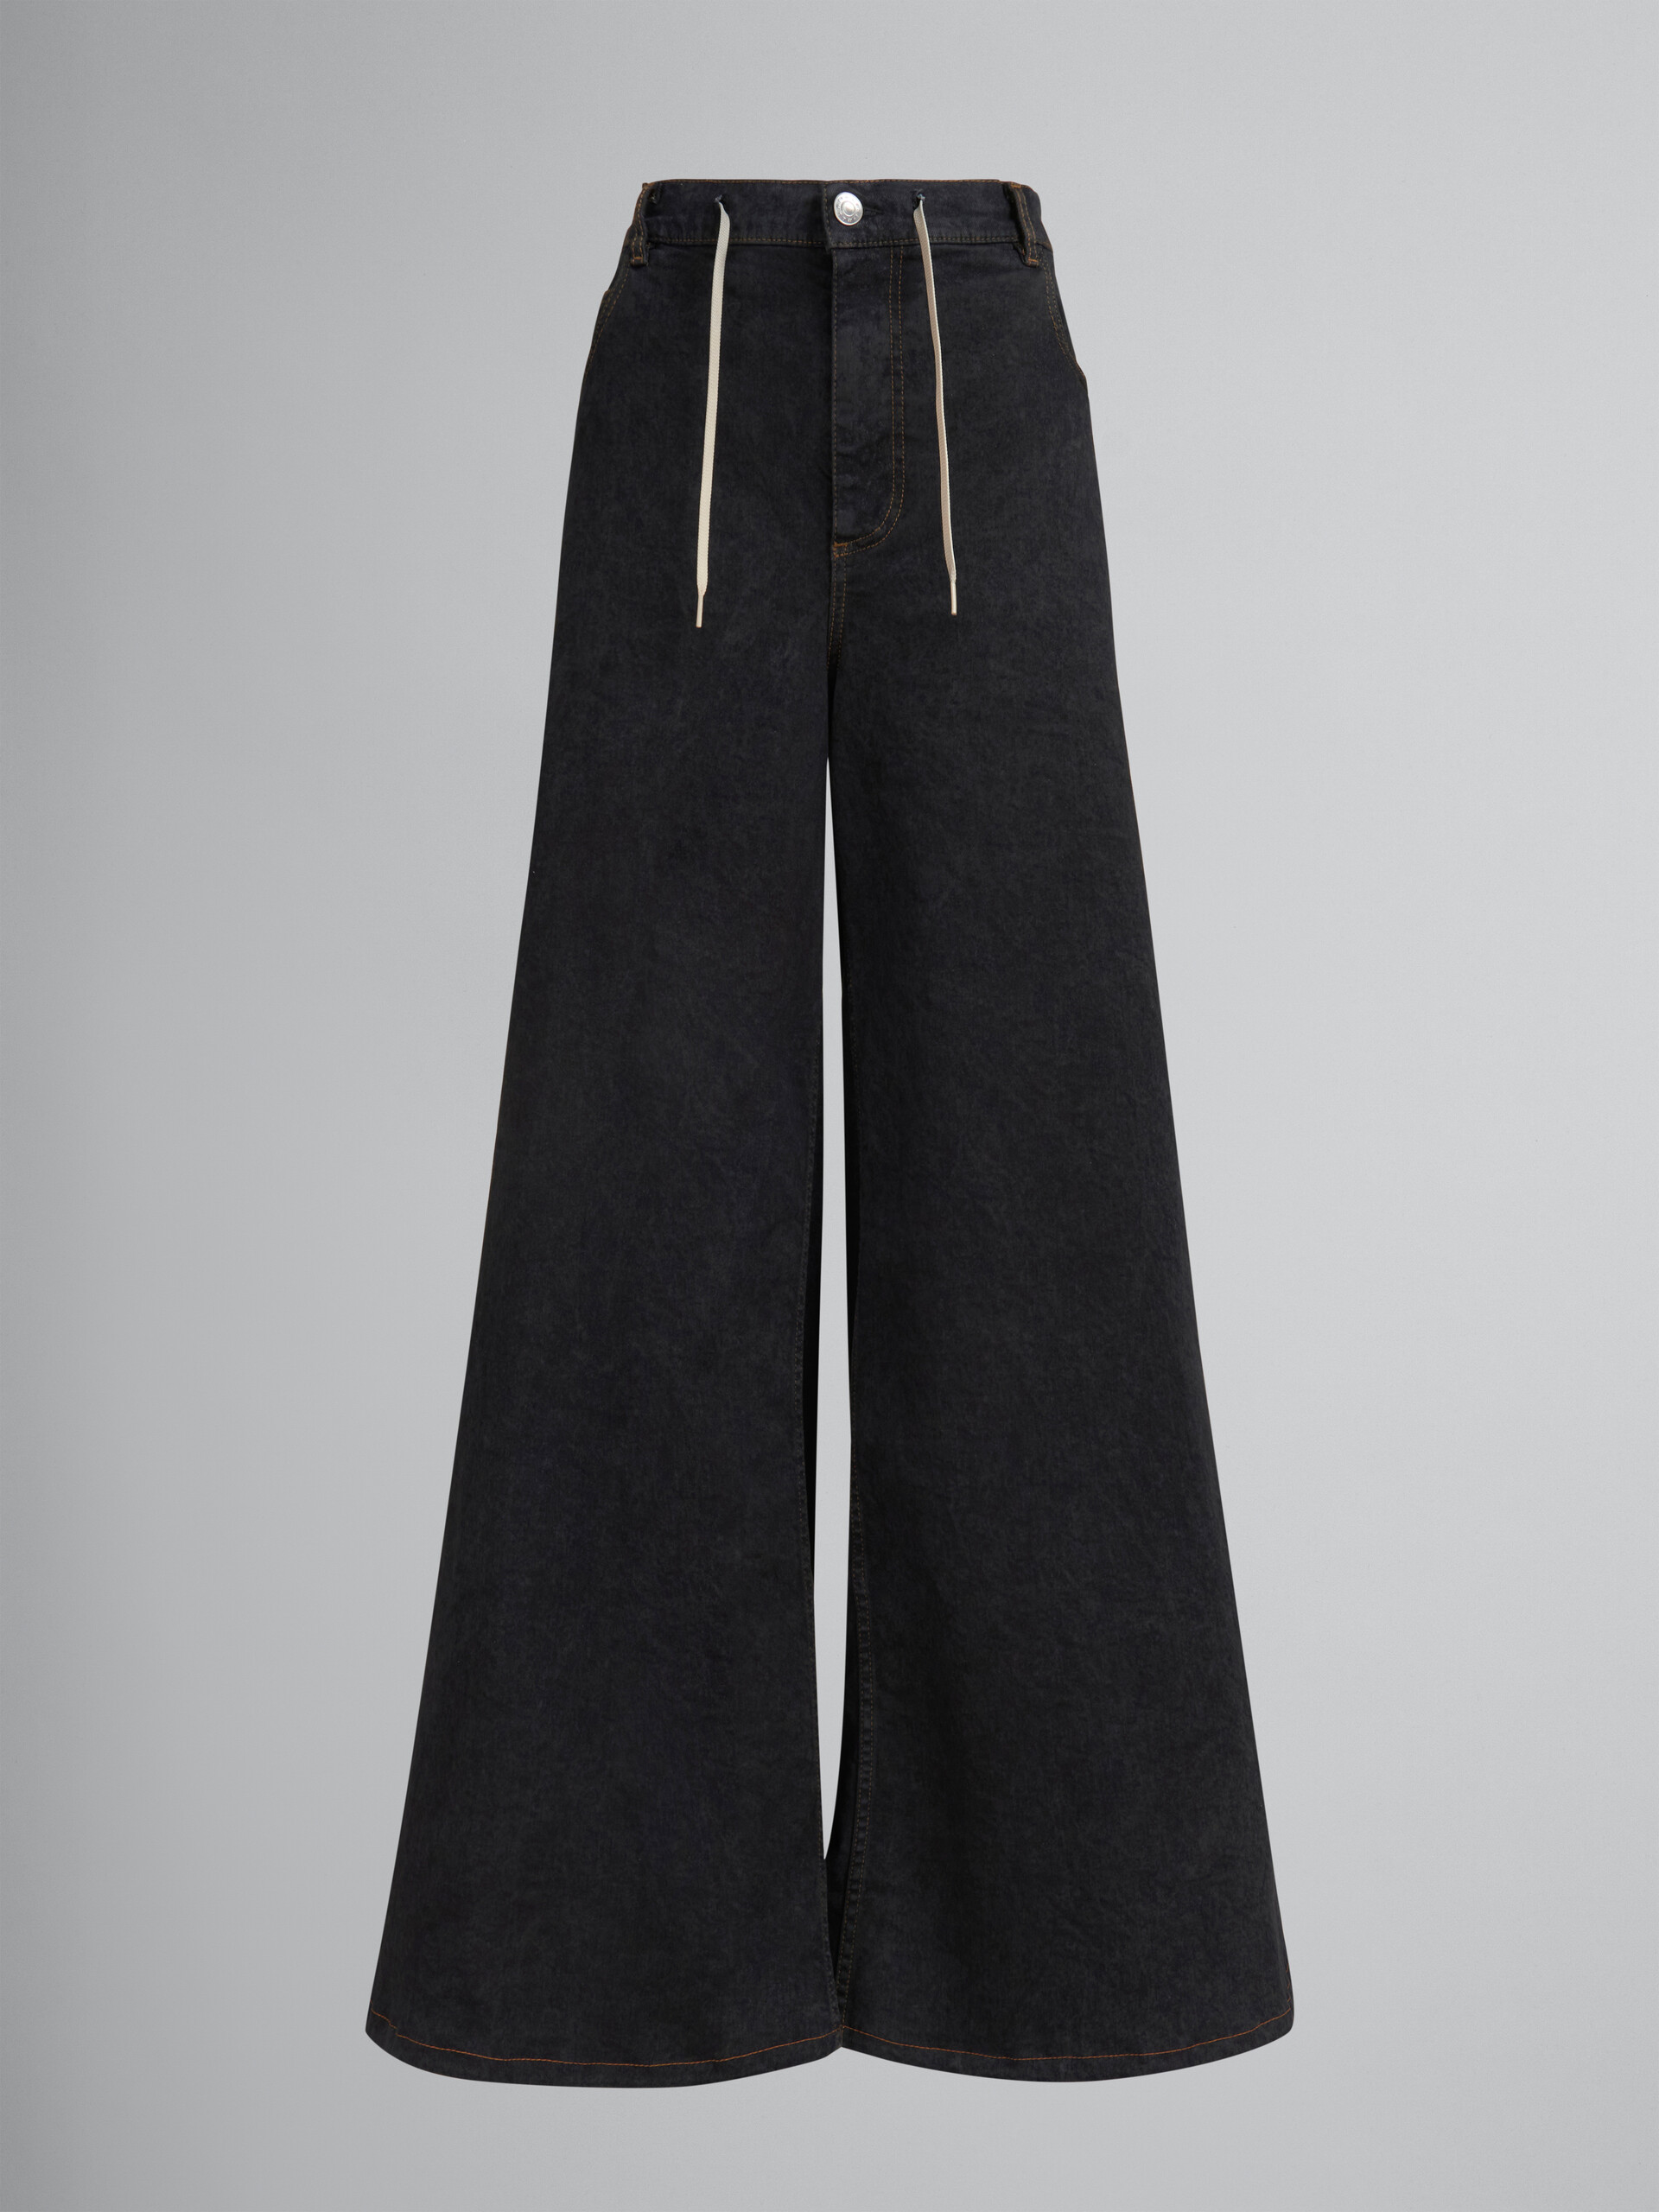 Jeans a gamba larga in denim effetto marmorizzato nero - Pantaloni - Image 1